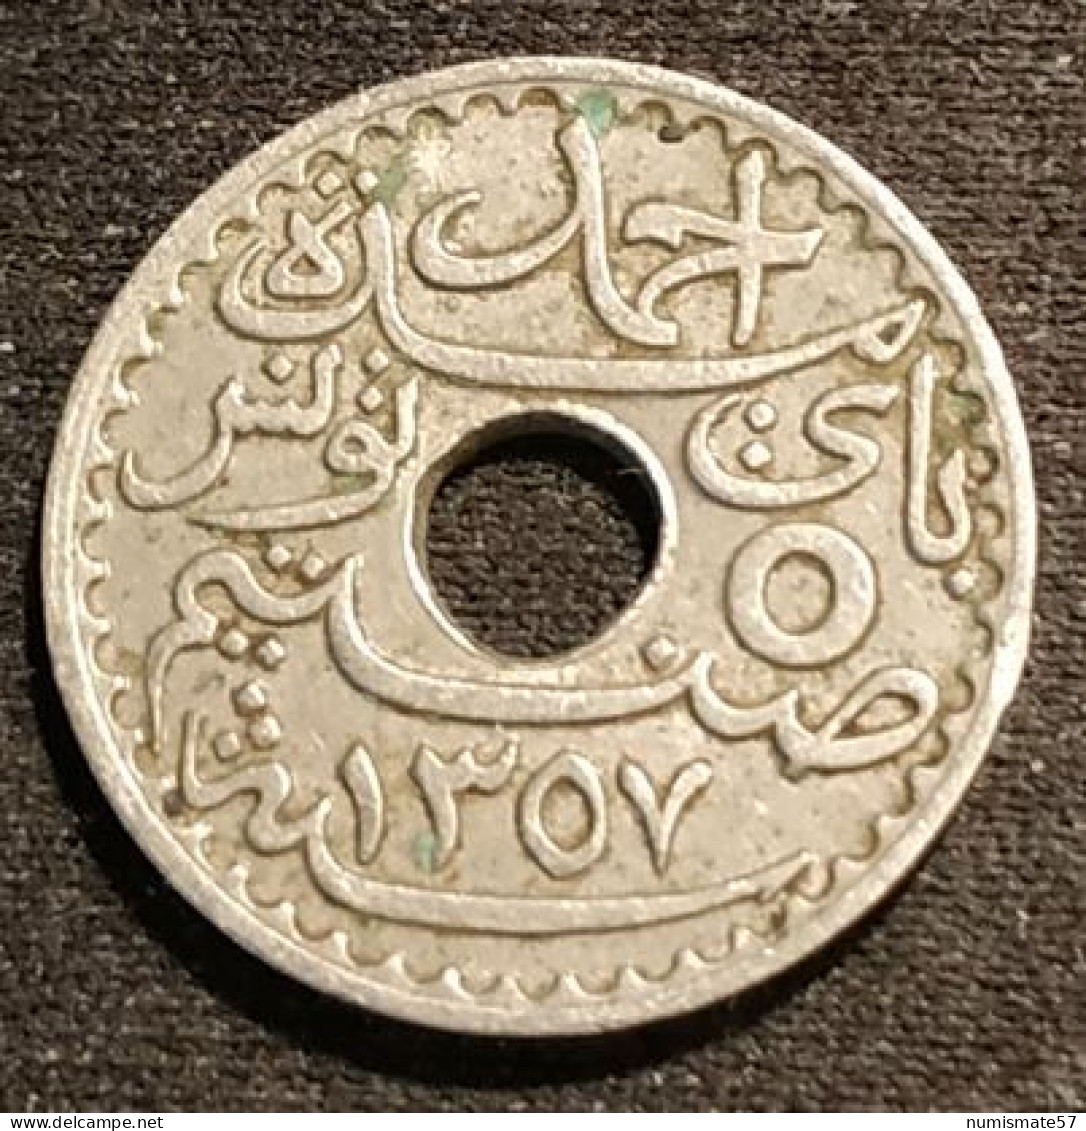 TUNISIE - TUNISIA - 5 CENTIMES 1938 ( 1357 ) - Ahmad Pasha - Protectorat Français - KM 258 - Tunesien